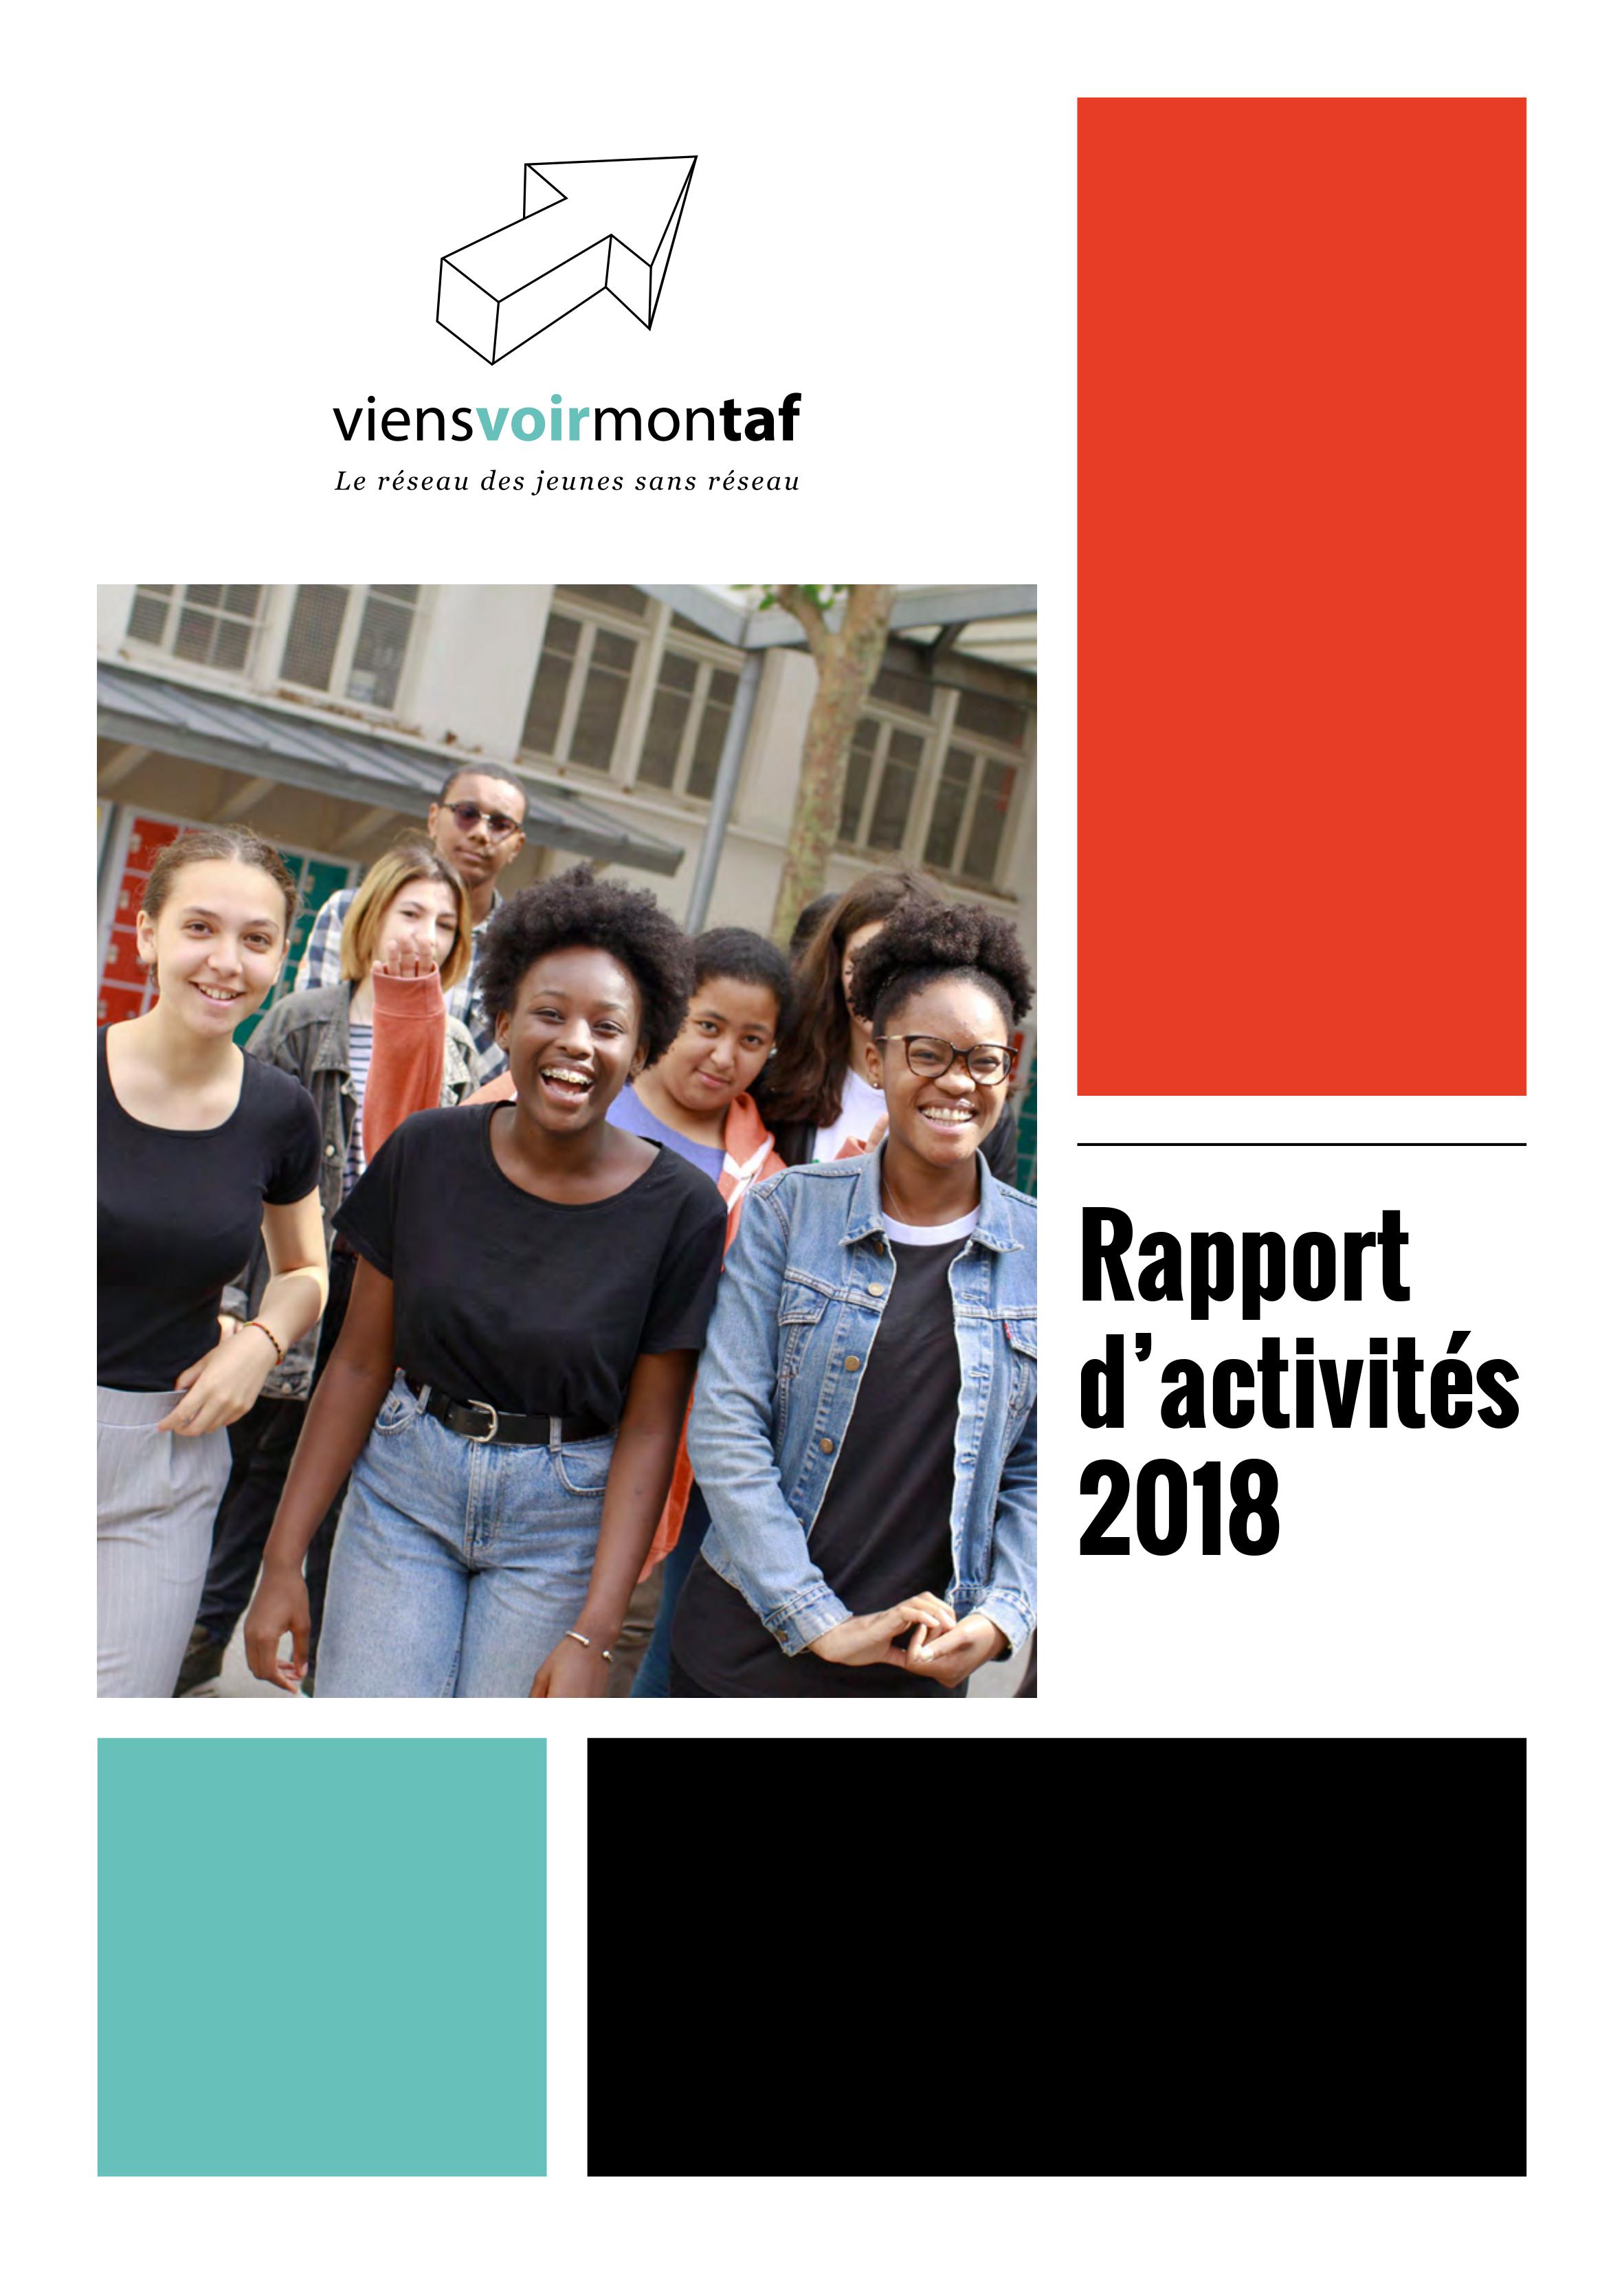 Rapport d'activité 2018 viensvoirmontaf VVMT